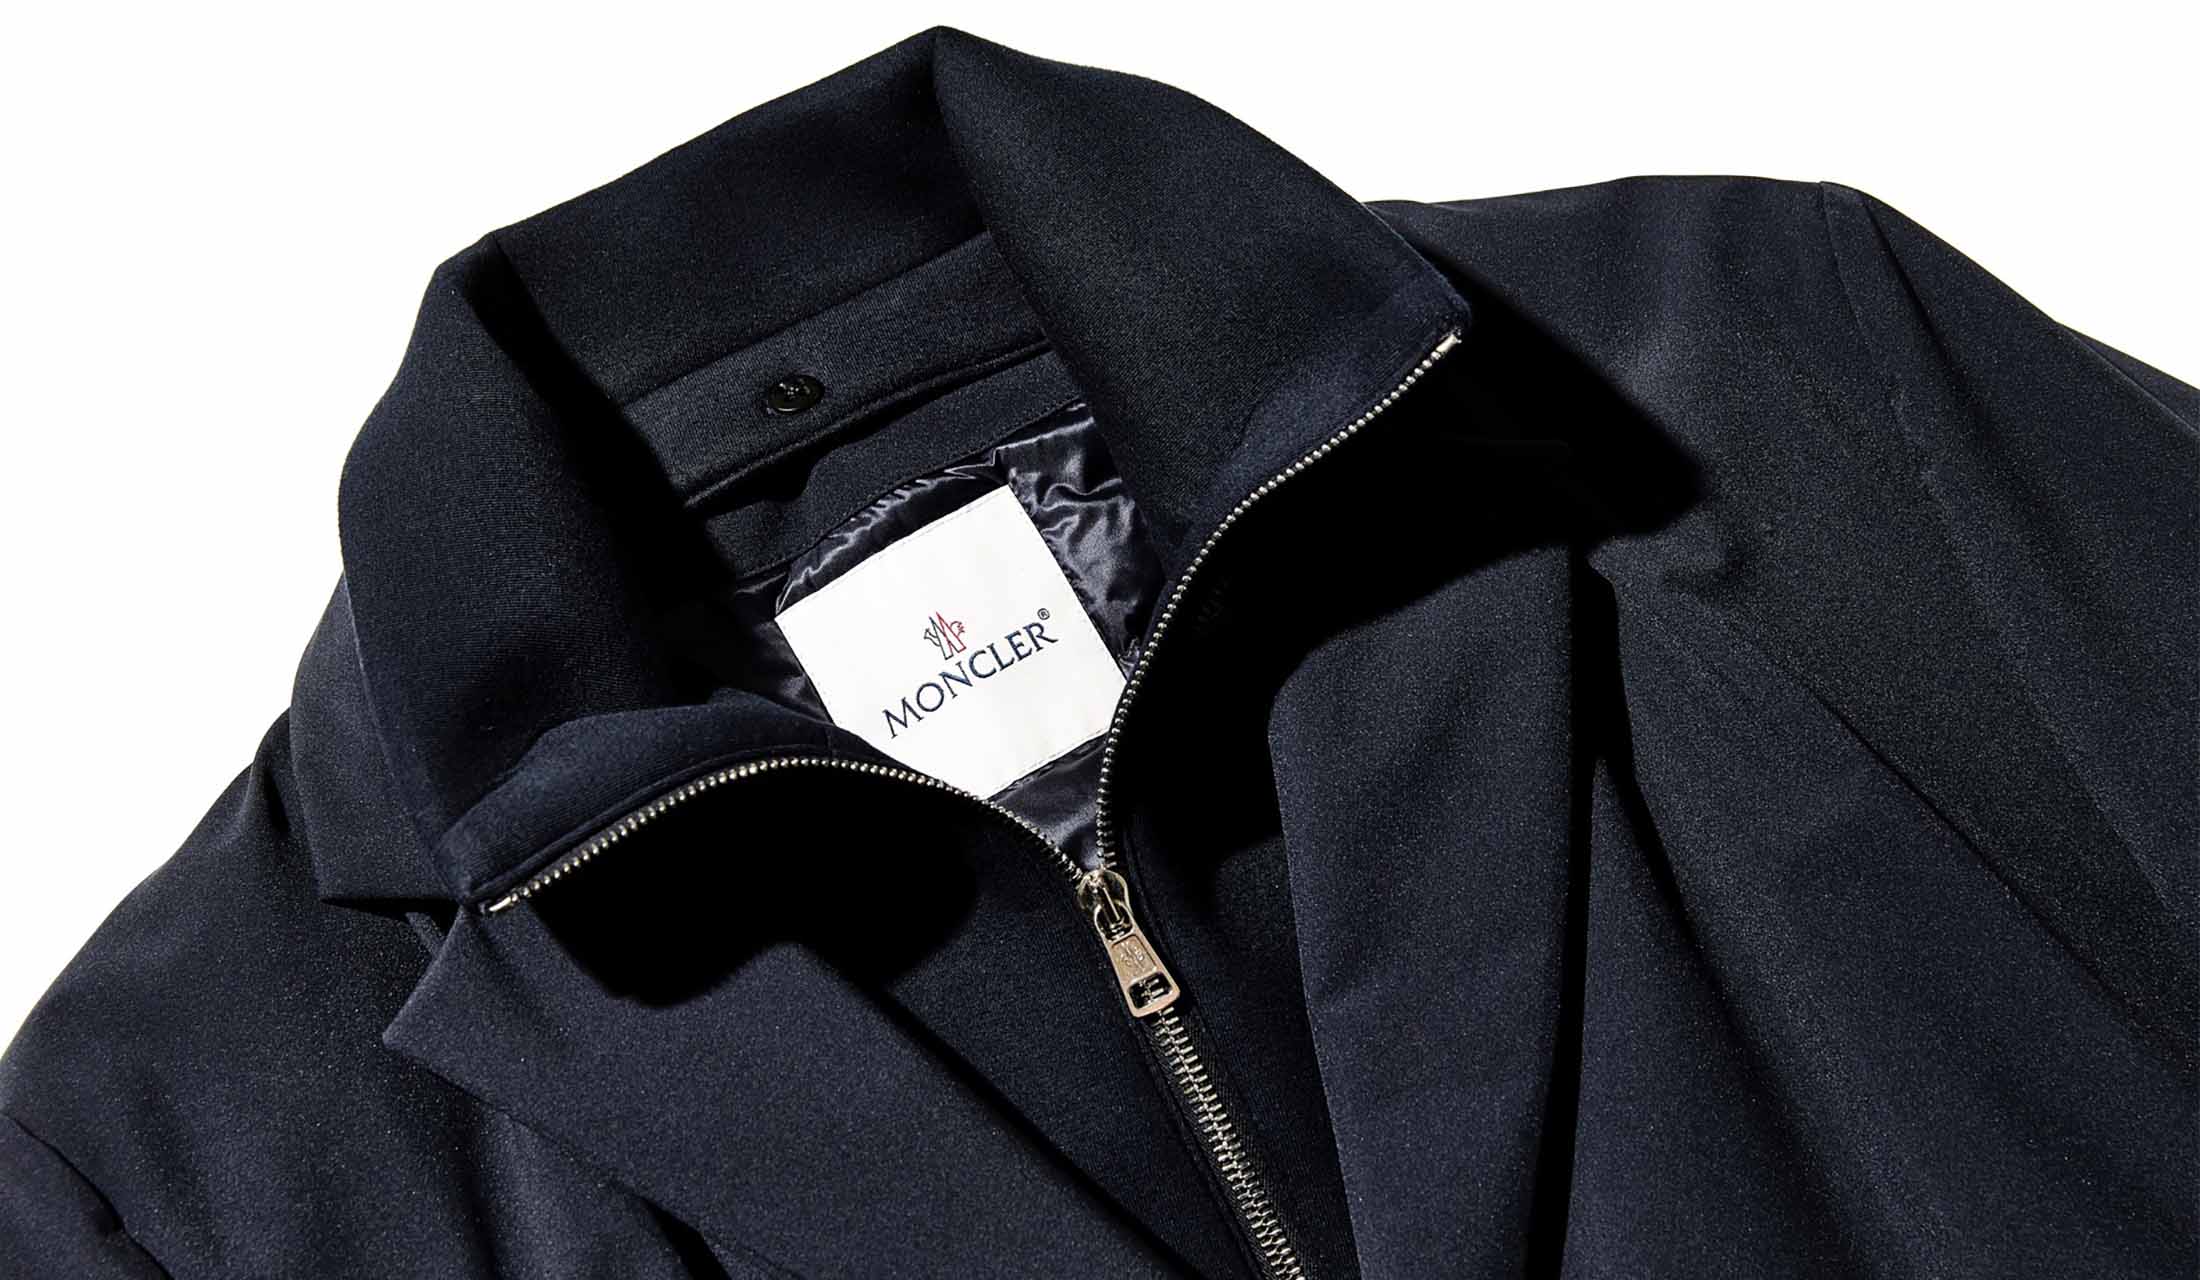 「モンクレール」のダウンコートは、防寒性とファッション性が両立した唯一無二の存在だ！スタイルを決定づけるハイブリッドデザインをまとう